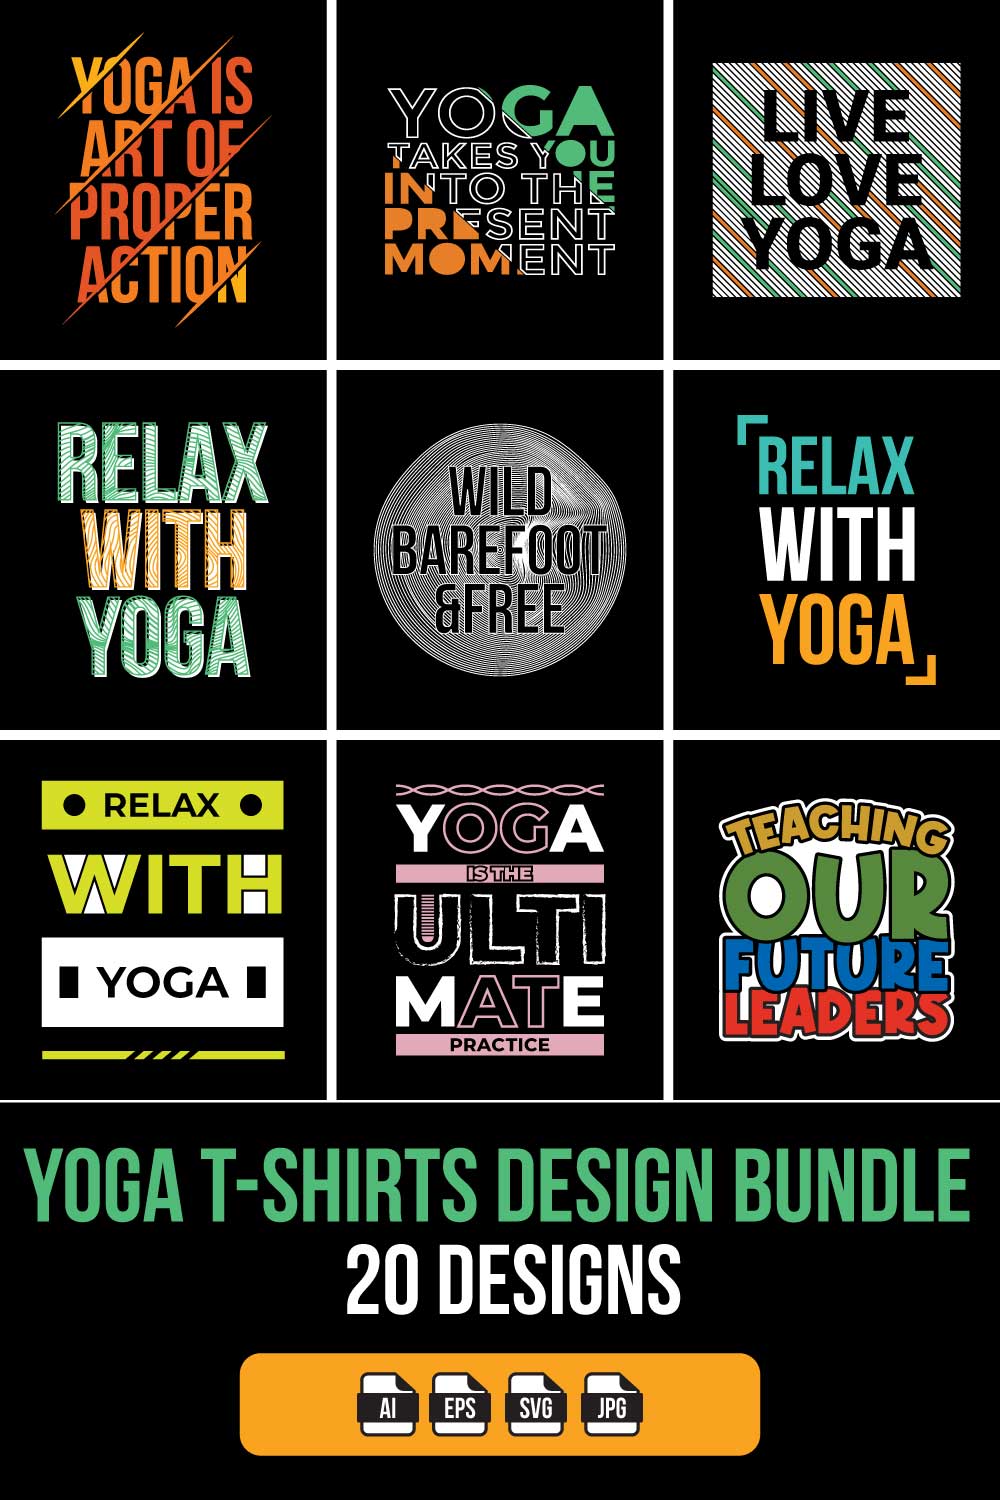 Yoga T-Shirts Design Bundle pinterest preview image.